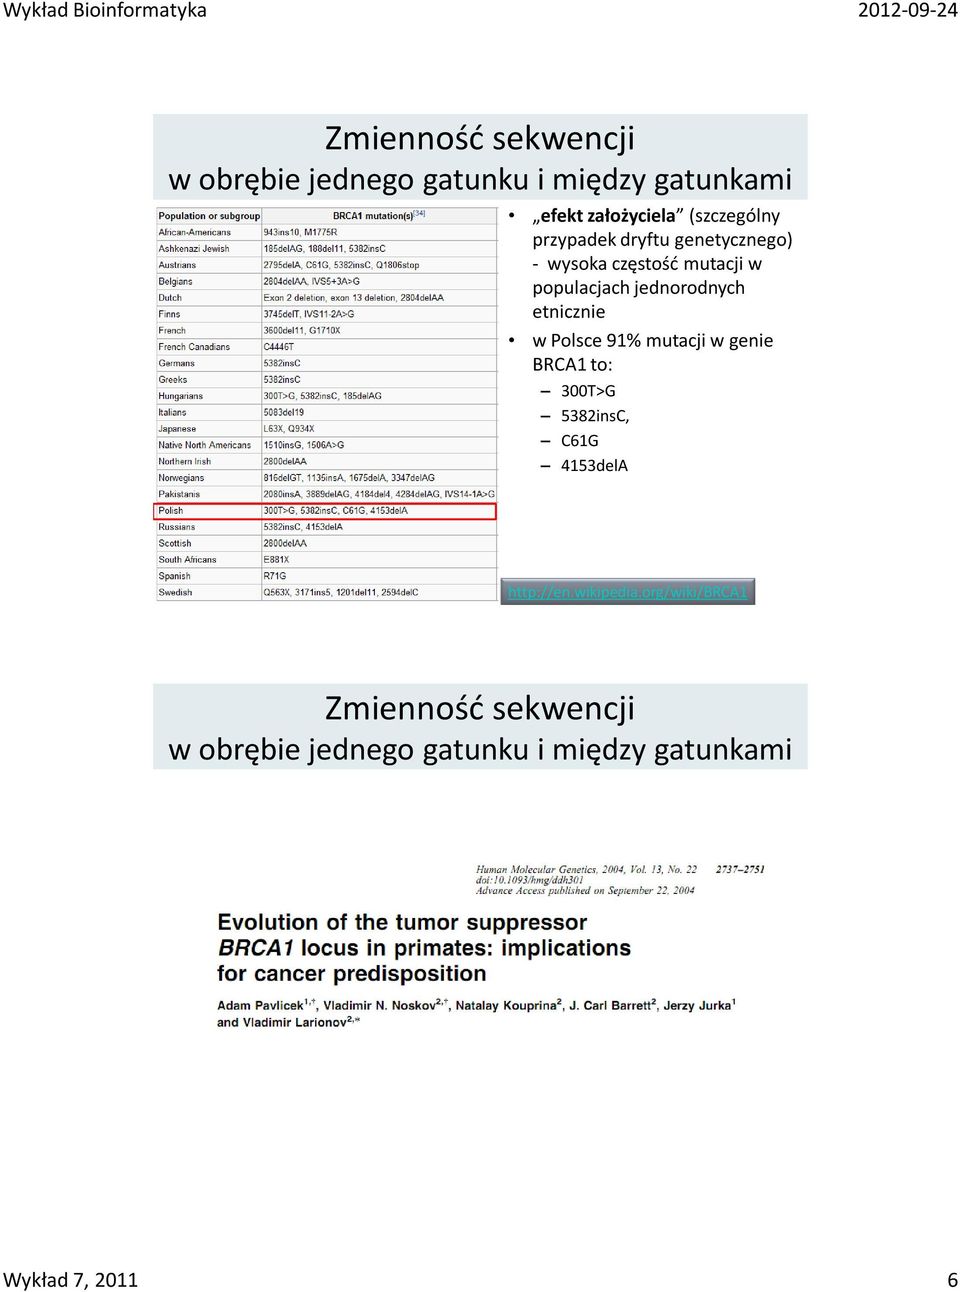 jednorodnych etnicznie w Polsce 91% mutacji w genie BRCA1 to: 300T>G 5382insC, C61G 4153delA